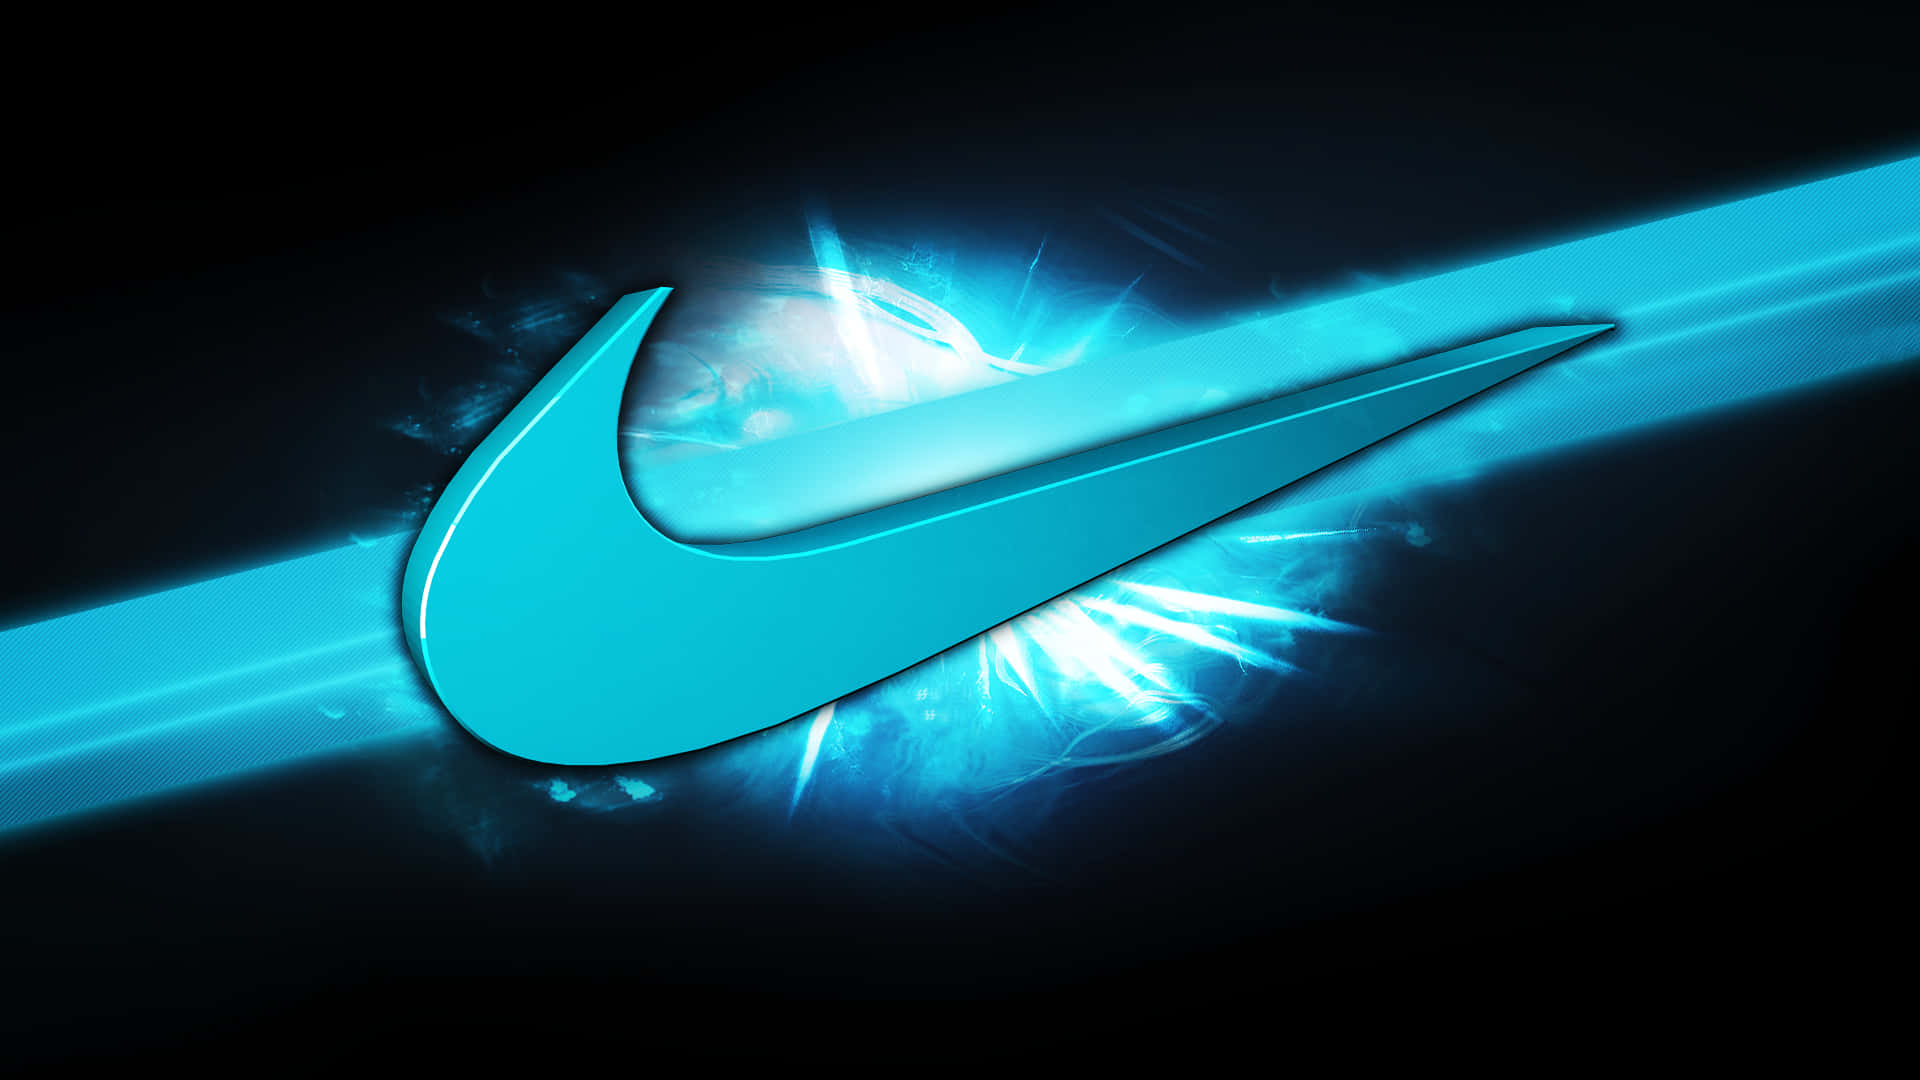 Logotipode Nike En Color Azul. Fondo de pantalla